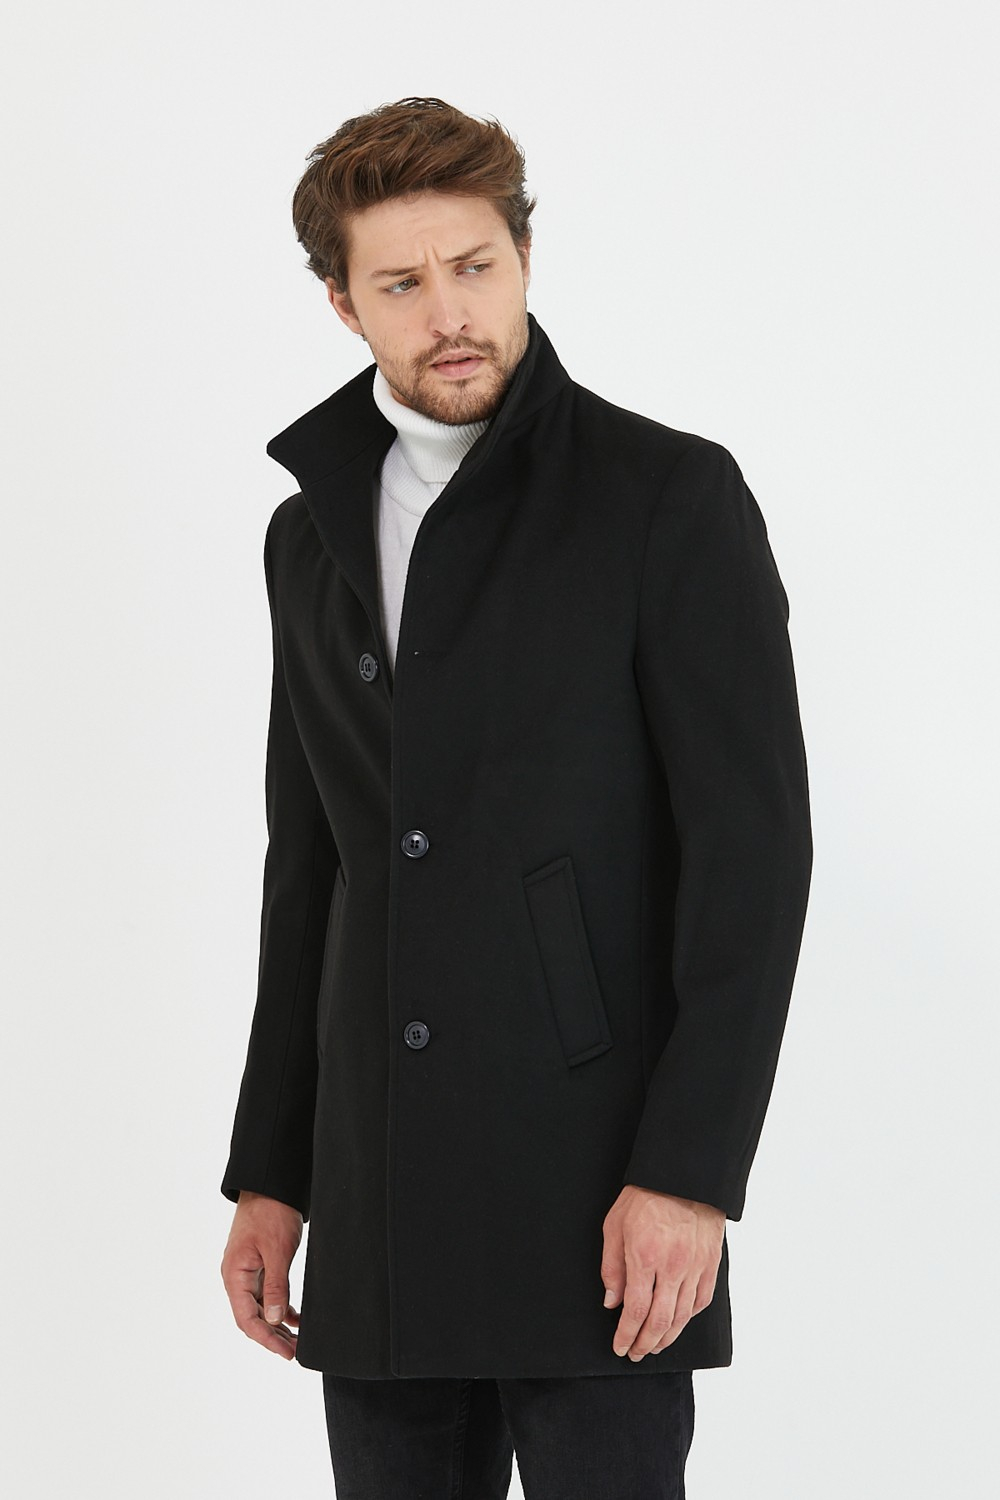 Пальто Mero Life для мужчин светло-серого цвета с воротником-стойкой